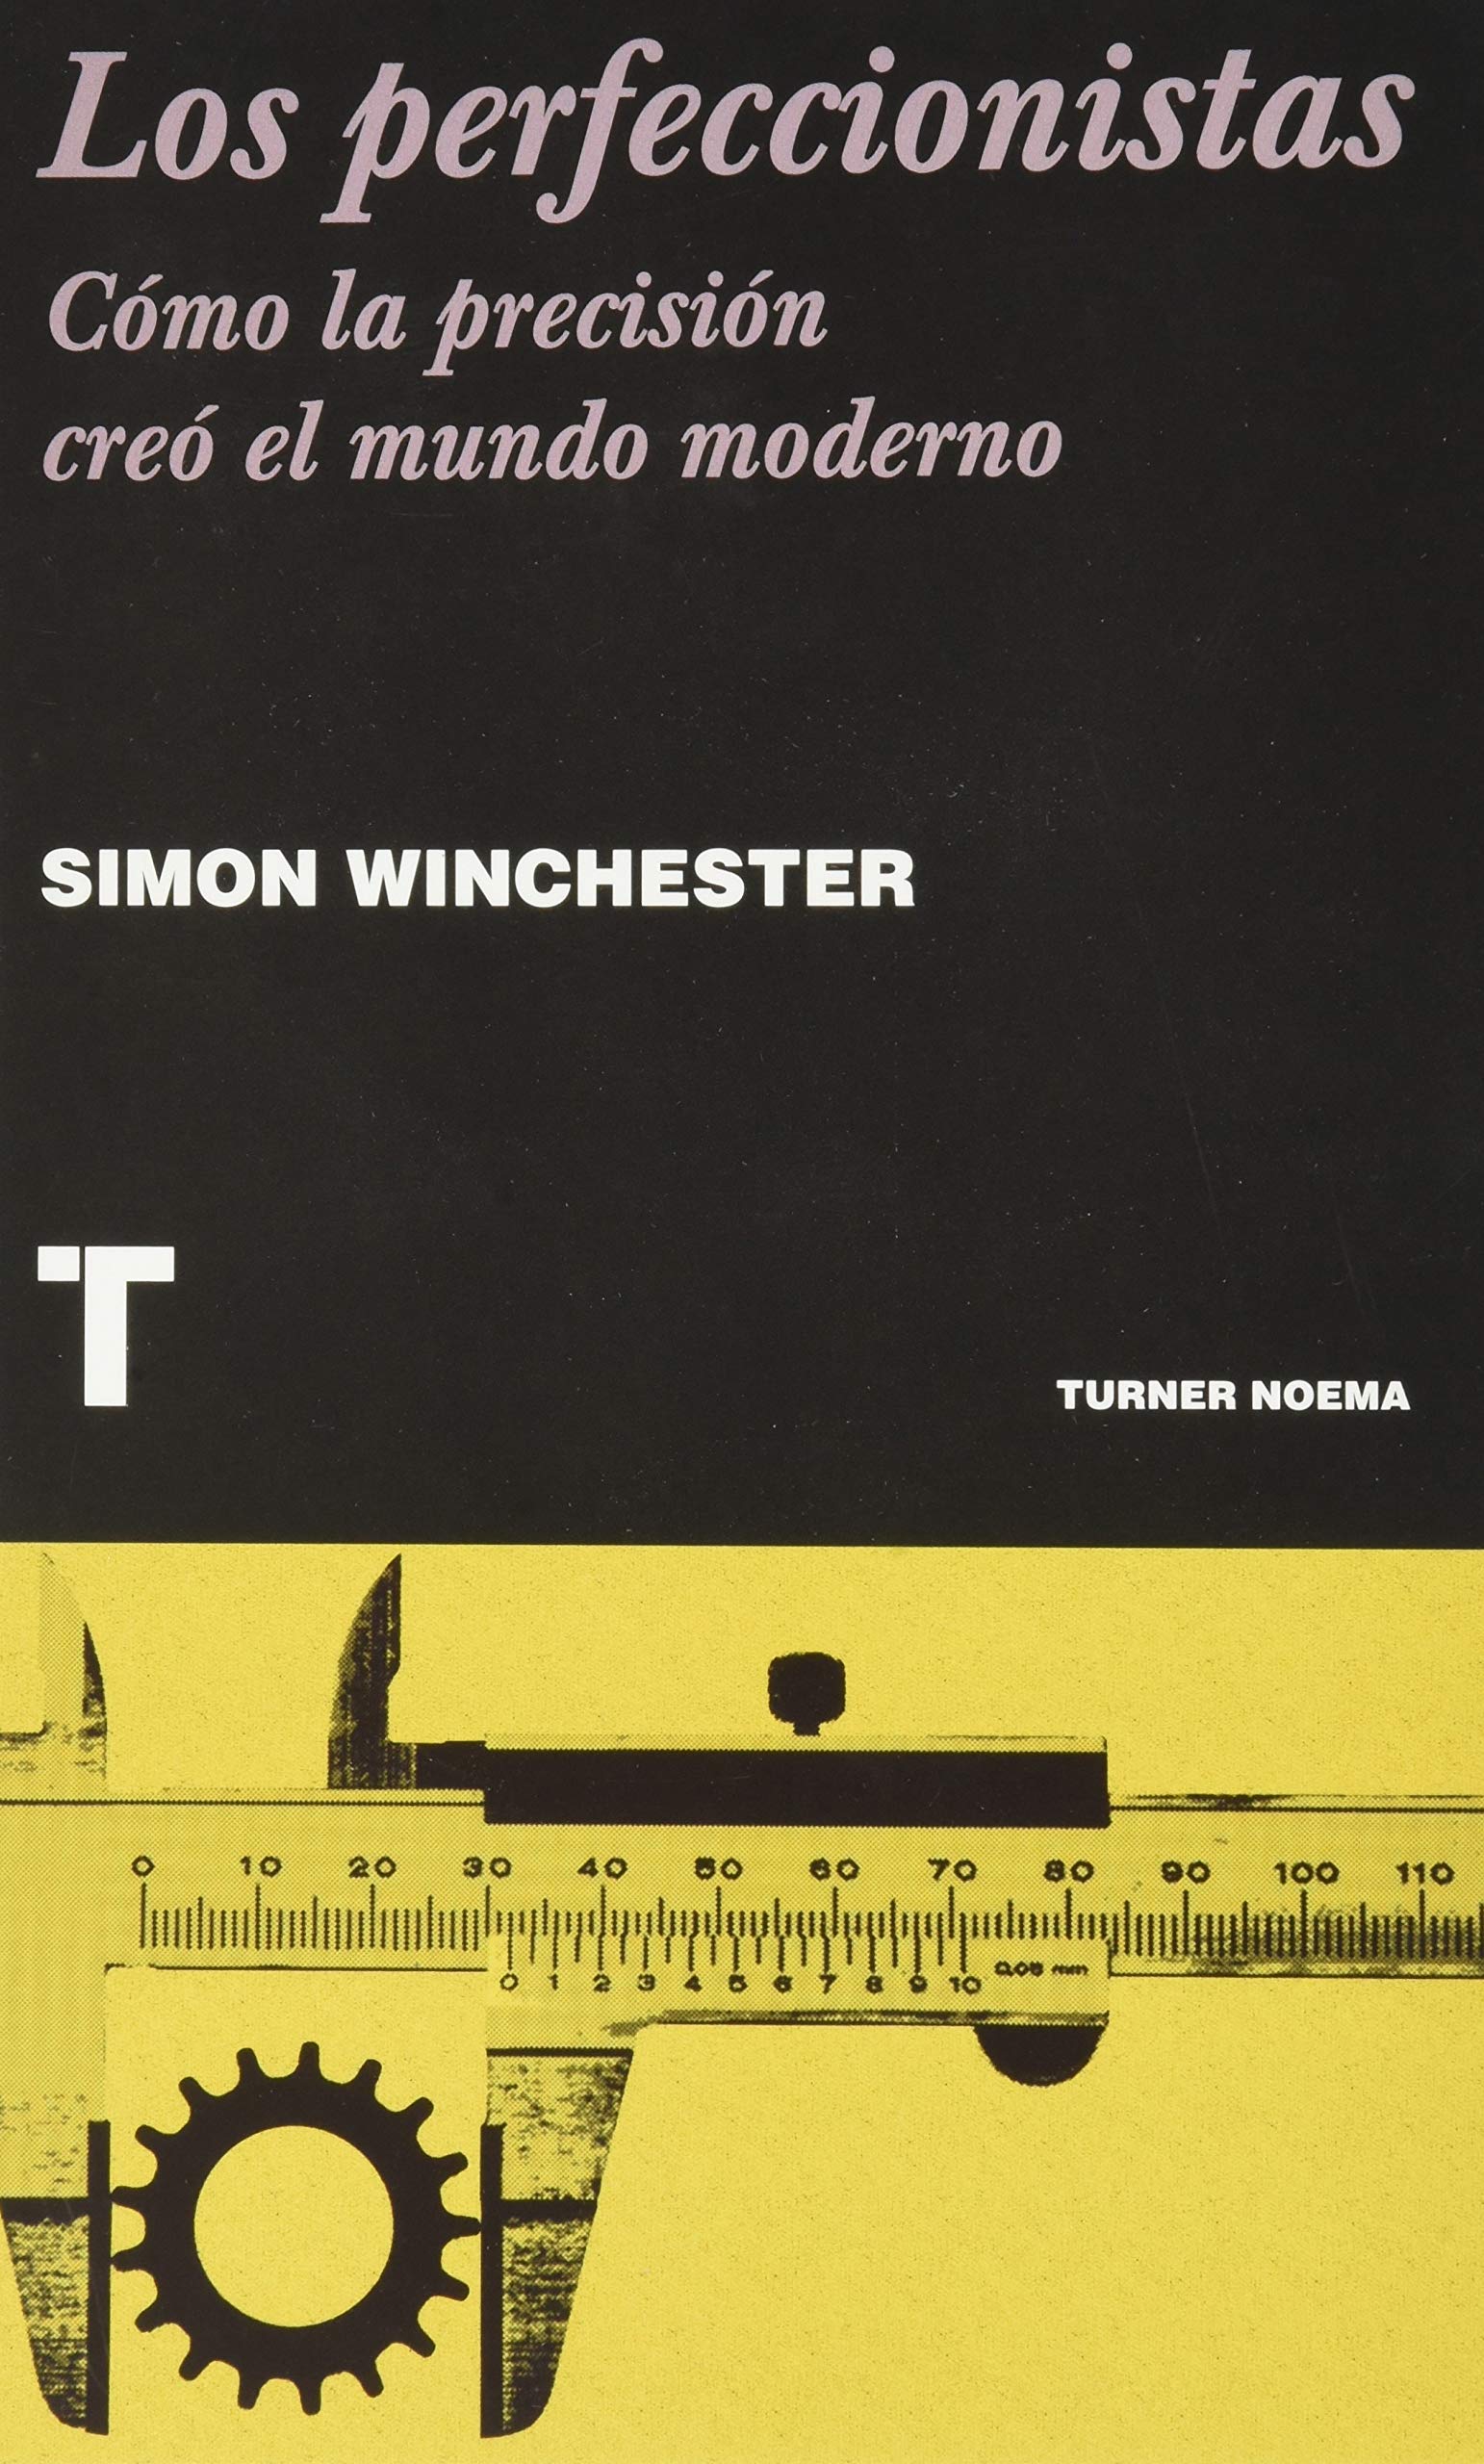 Los perfeccionistas, de Simon Winchester